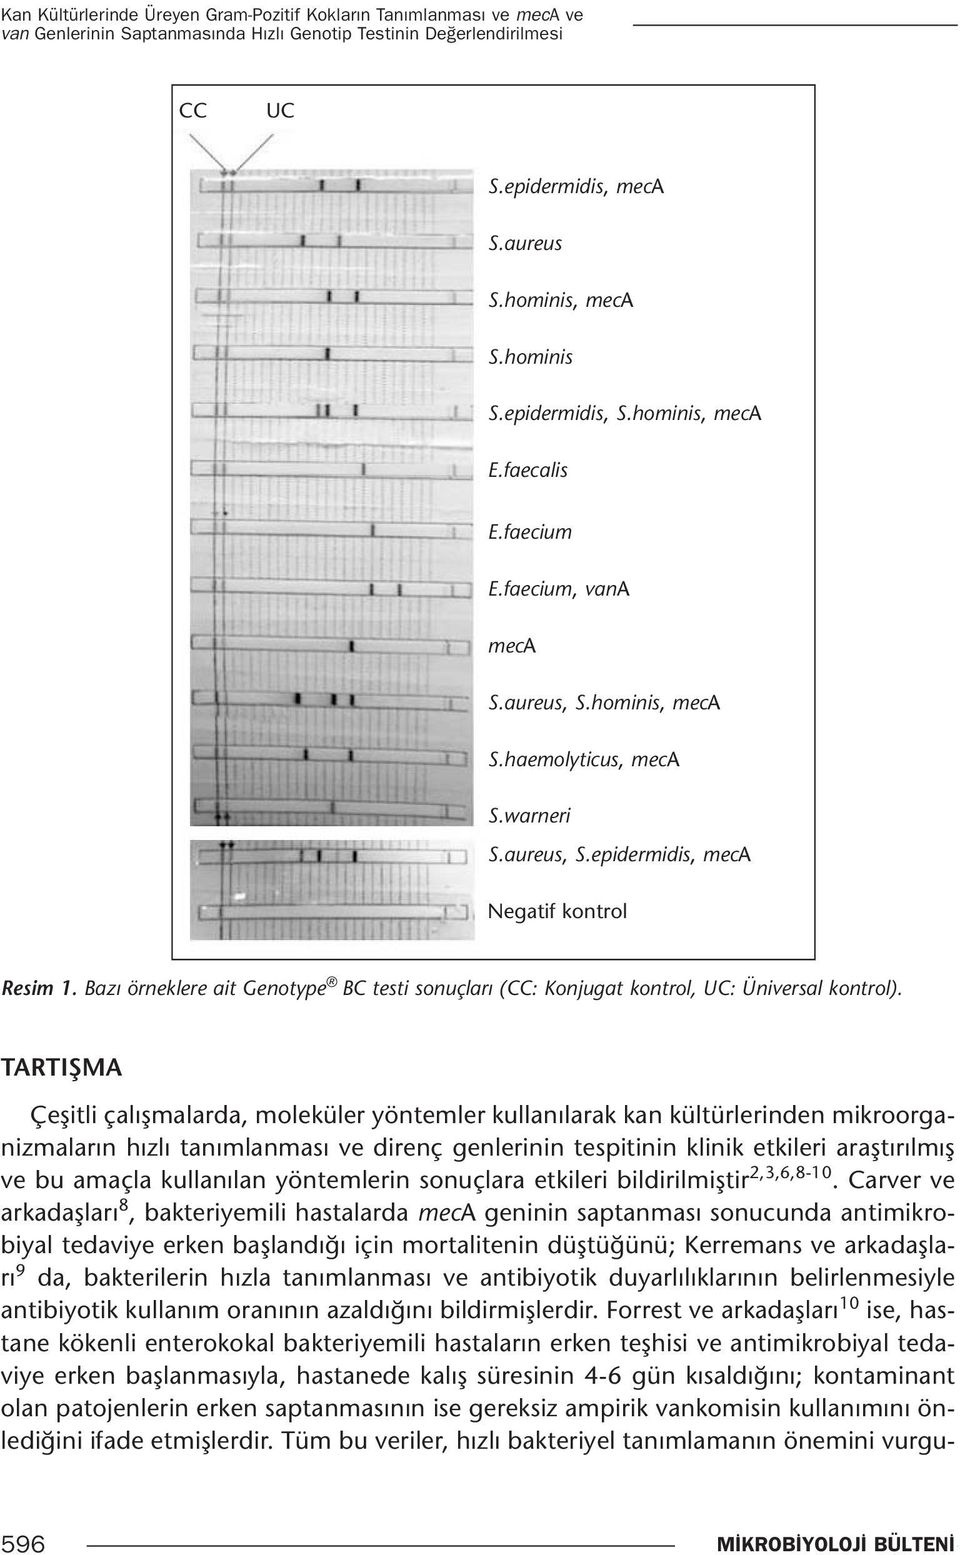 Bazı örneklere ait Genotype BC testi sonuçları (CC: Konjugat kontrol, UC: Üniversal kontrol).